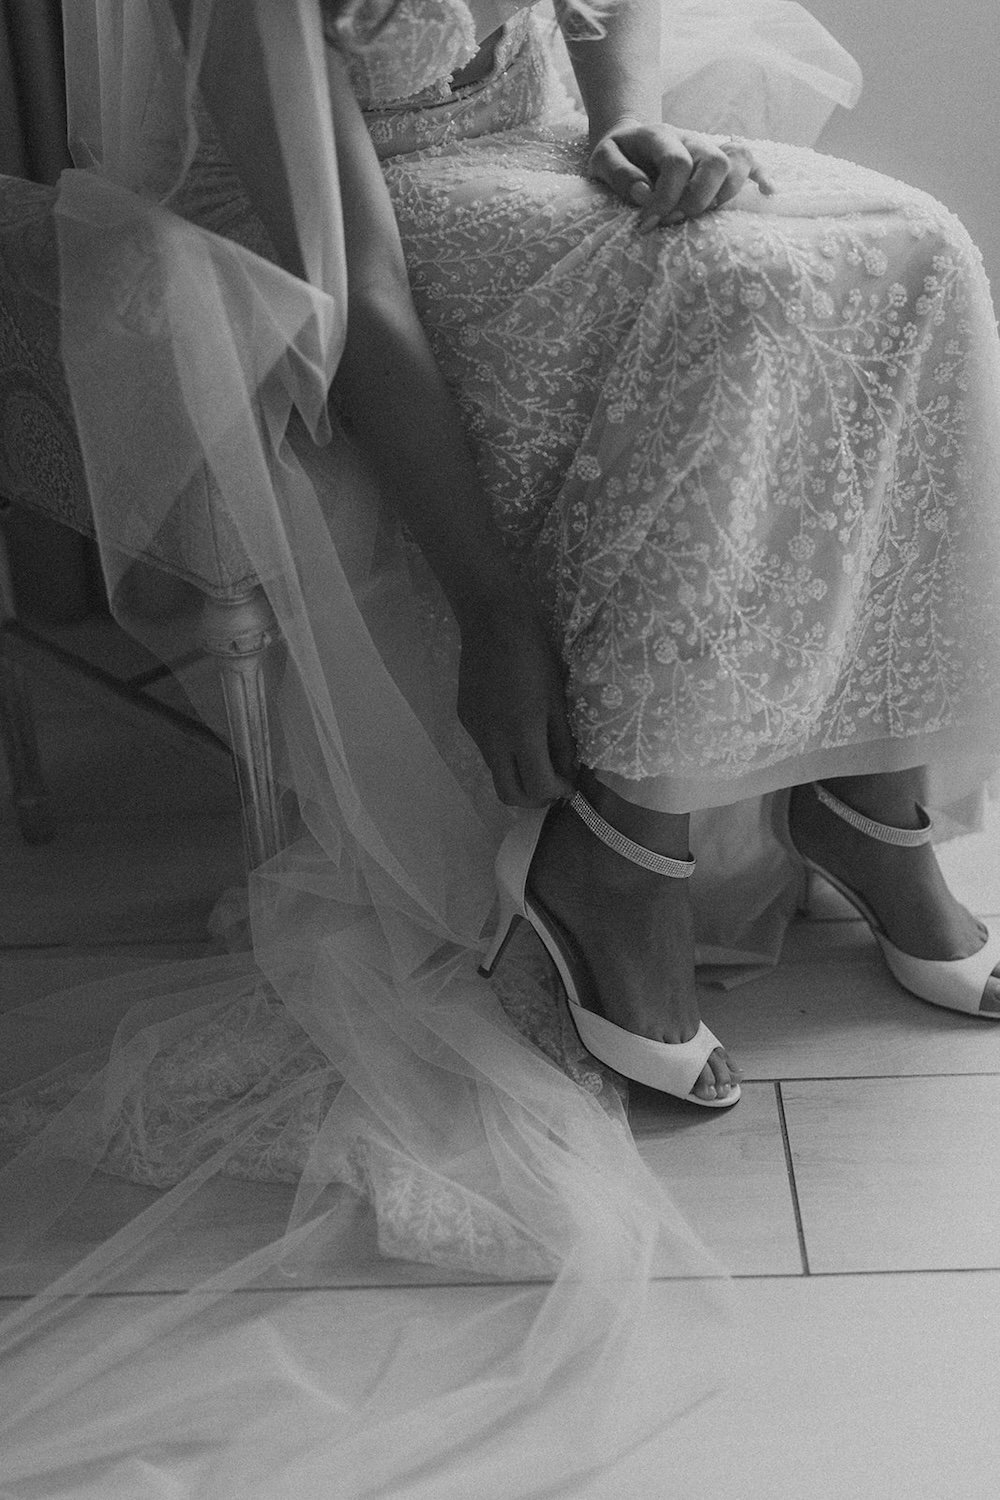 The bride buckles her wedding heel in preparation for her wedding.